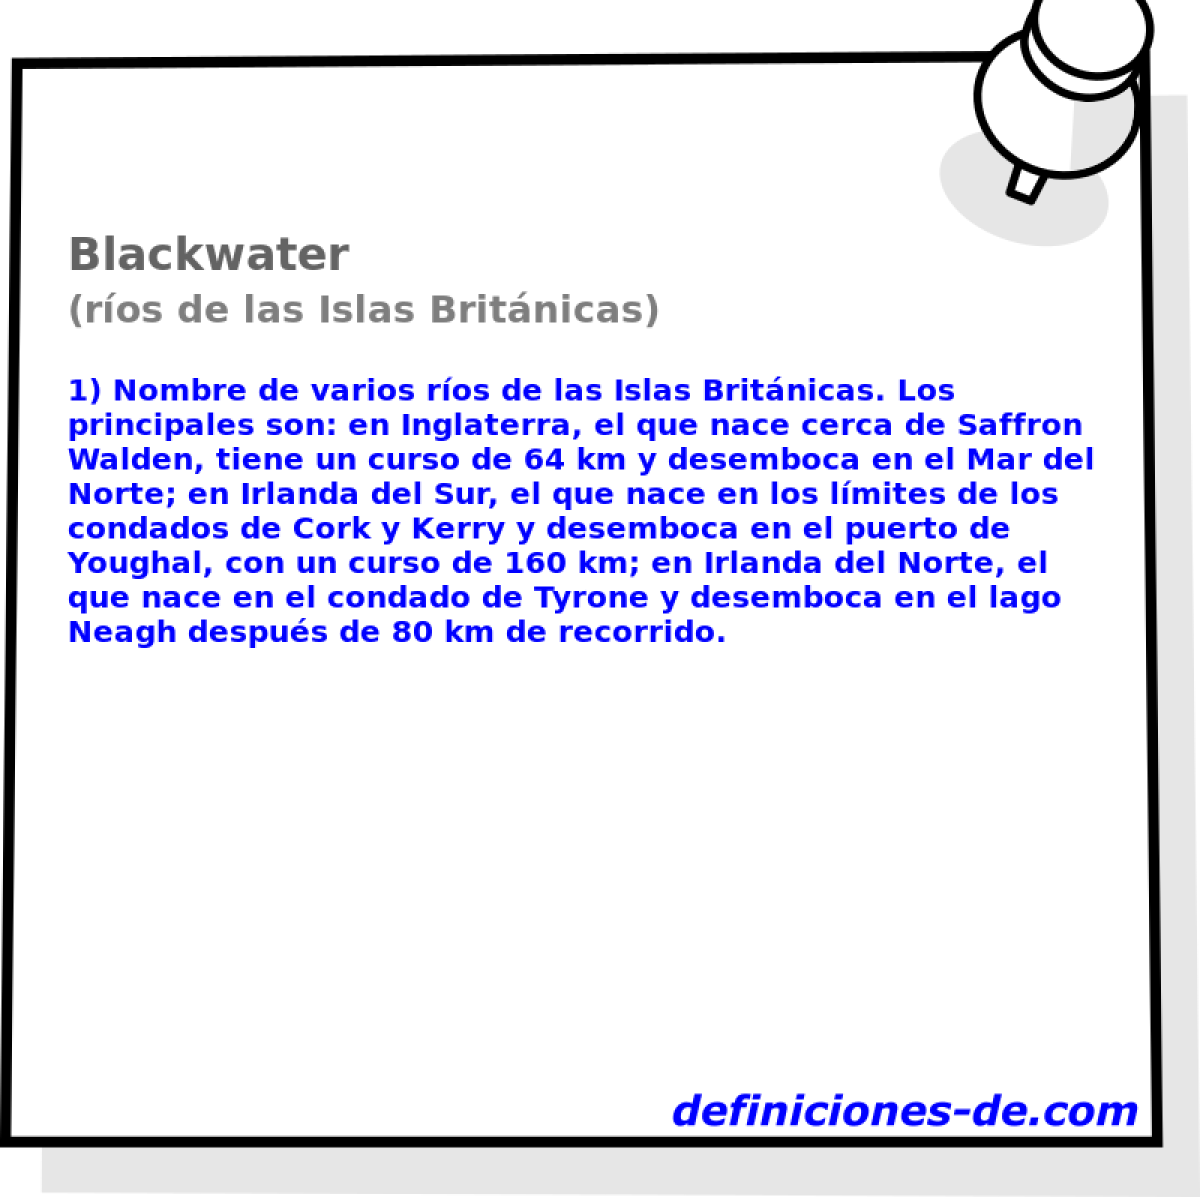 Blackwater (ros de las Islas Britnicas)